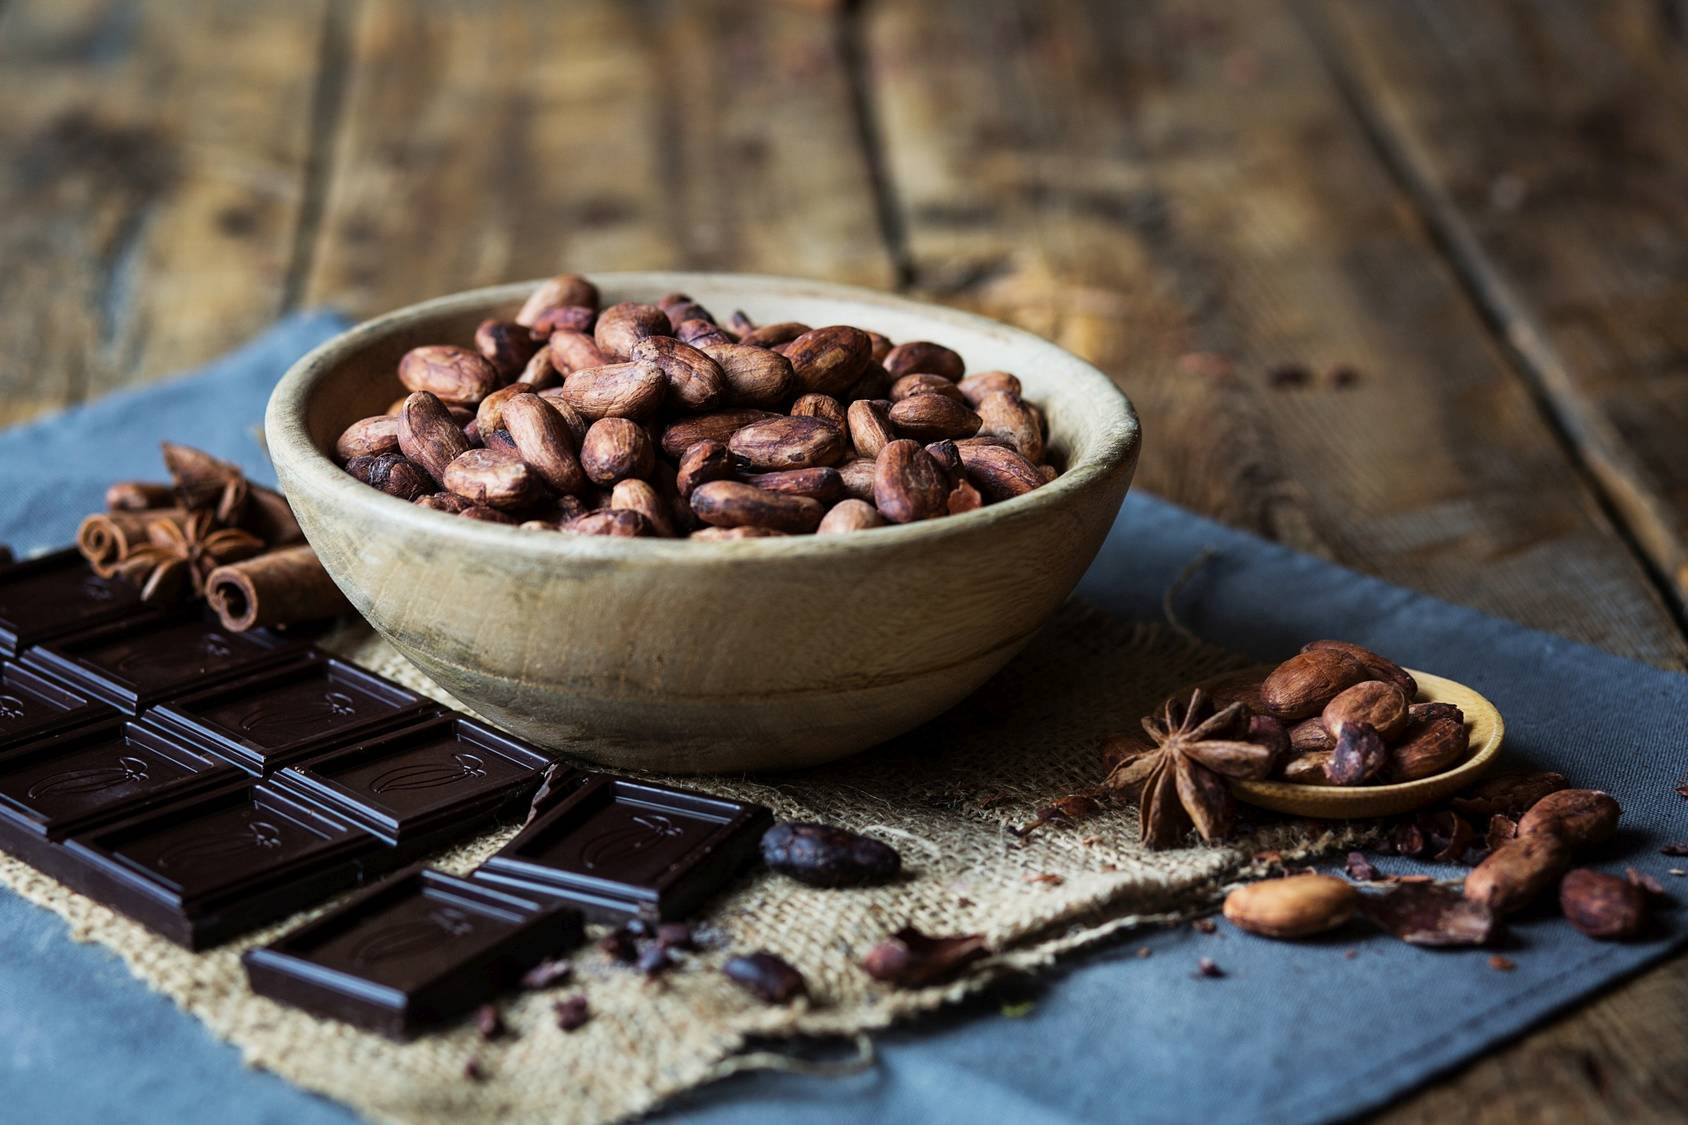 Gorzka czekolada zawiera 90% kakao. ziarna kakaowca w drewnianej miseczce, kawałki tabliczki czekolady.